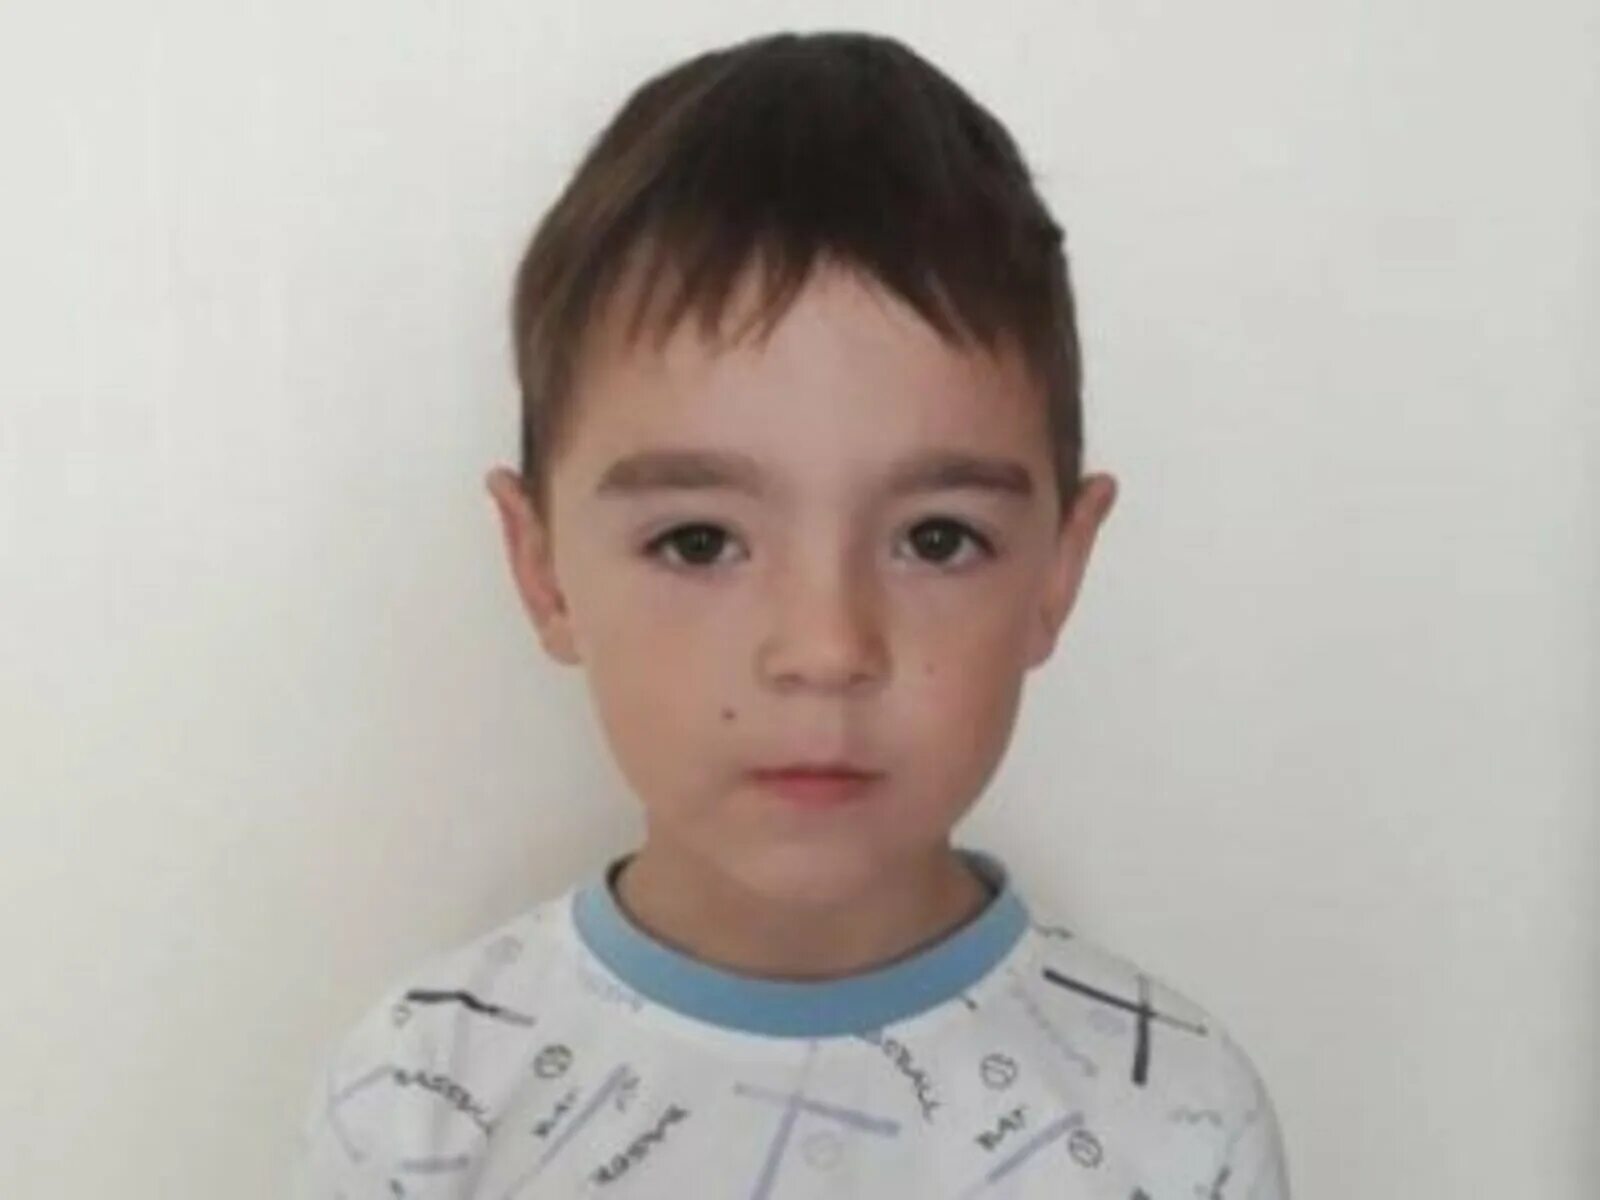 Пропажа детей в уфе. Мальчик пропал в Уфе 13 лет. Пропал мальчик в 2001 году в Сибае. Уфа потерял улица ребенка. Пропал мальчик Татарстан 19.93.2022.